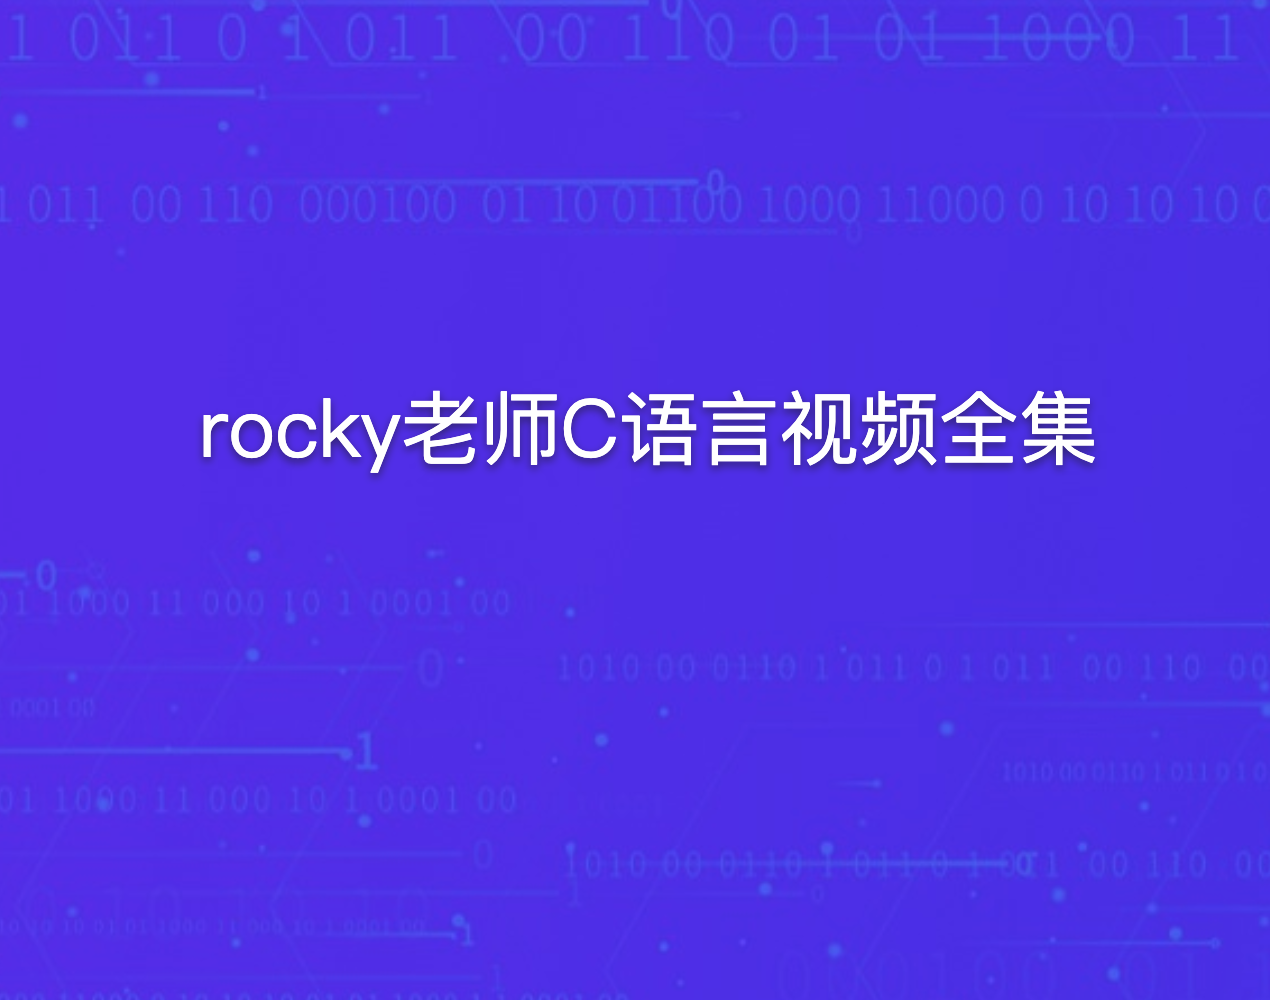 rocky老师C语言视频全集